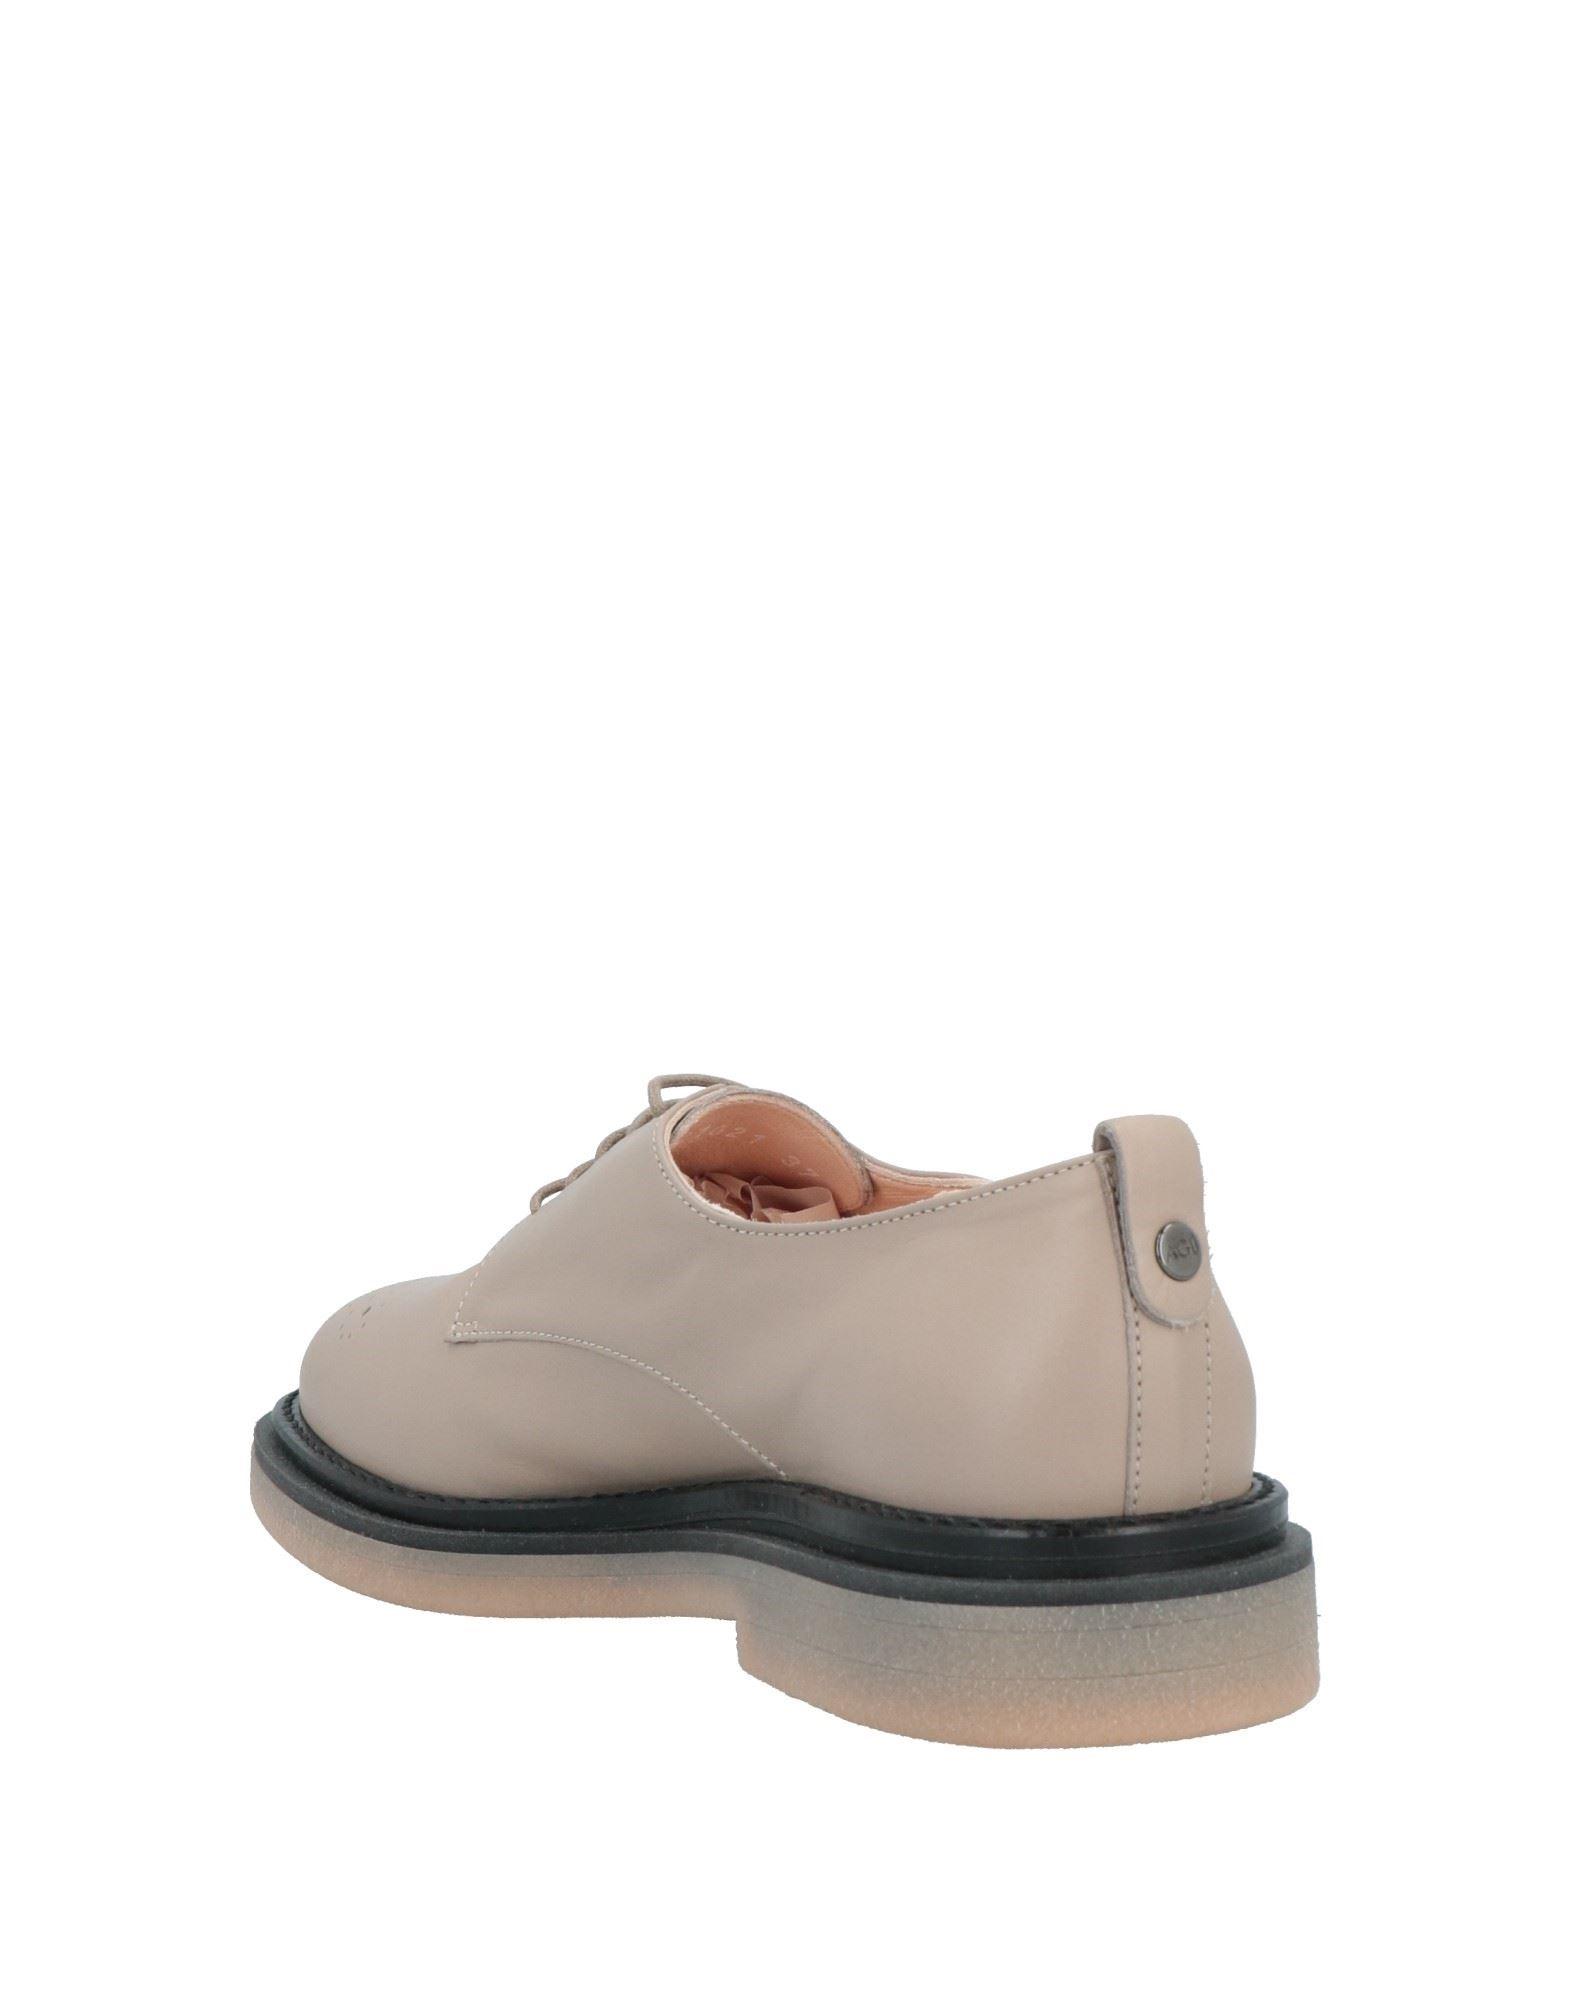 Agl Attilio Giusti Leombruni Lace-up Shoes in Gray | Lyst